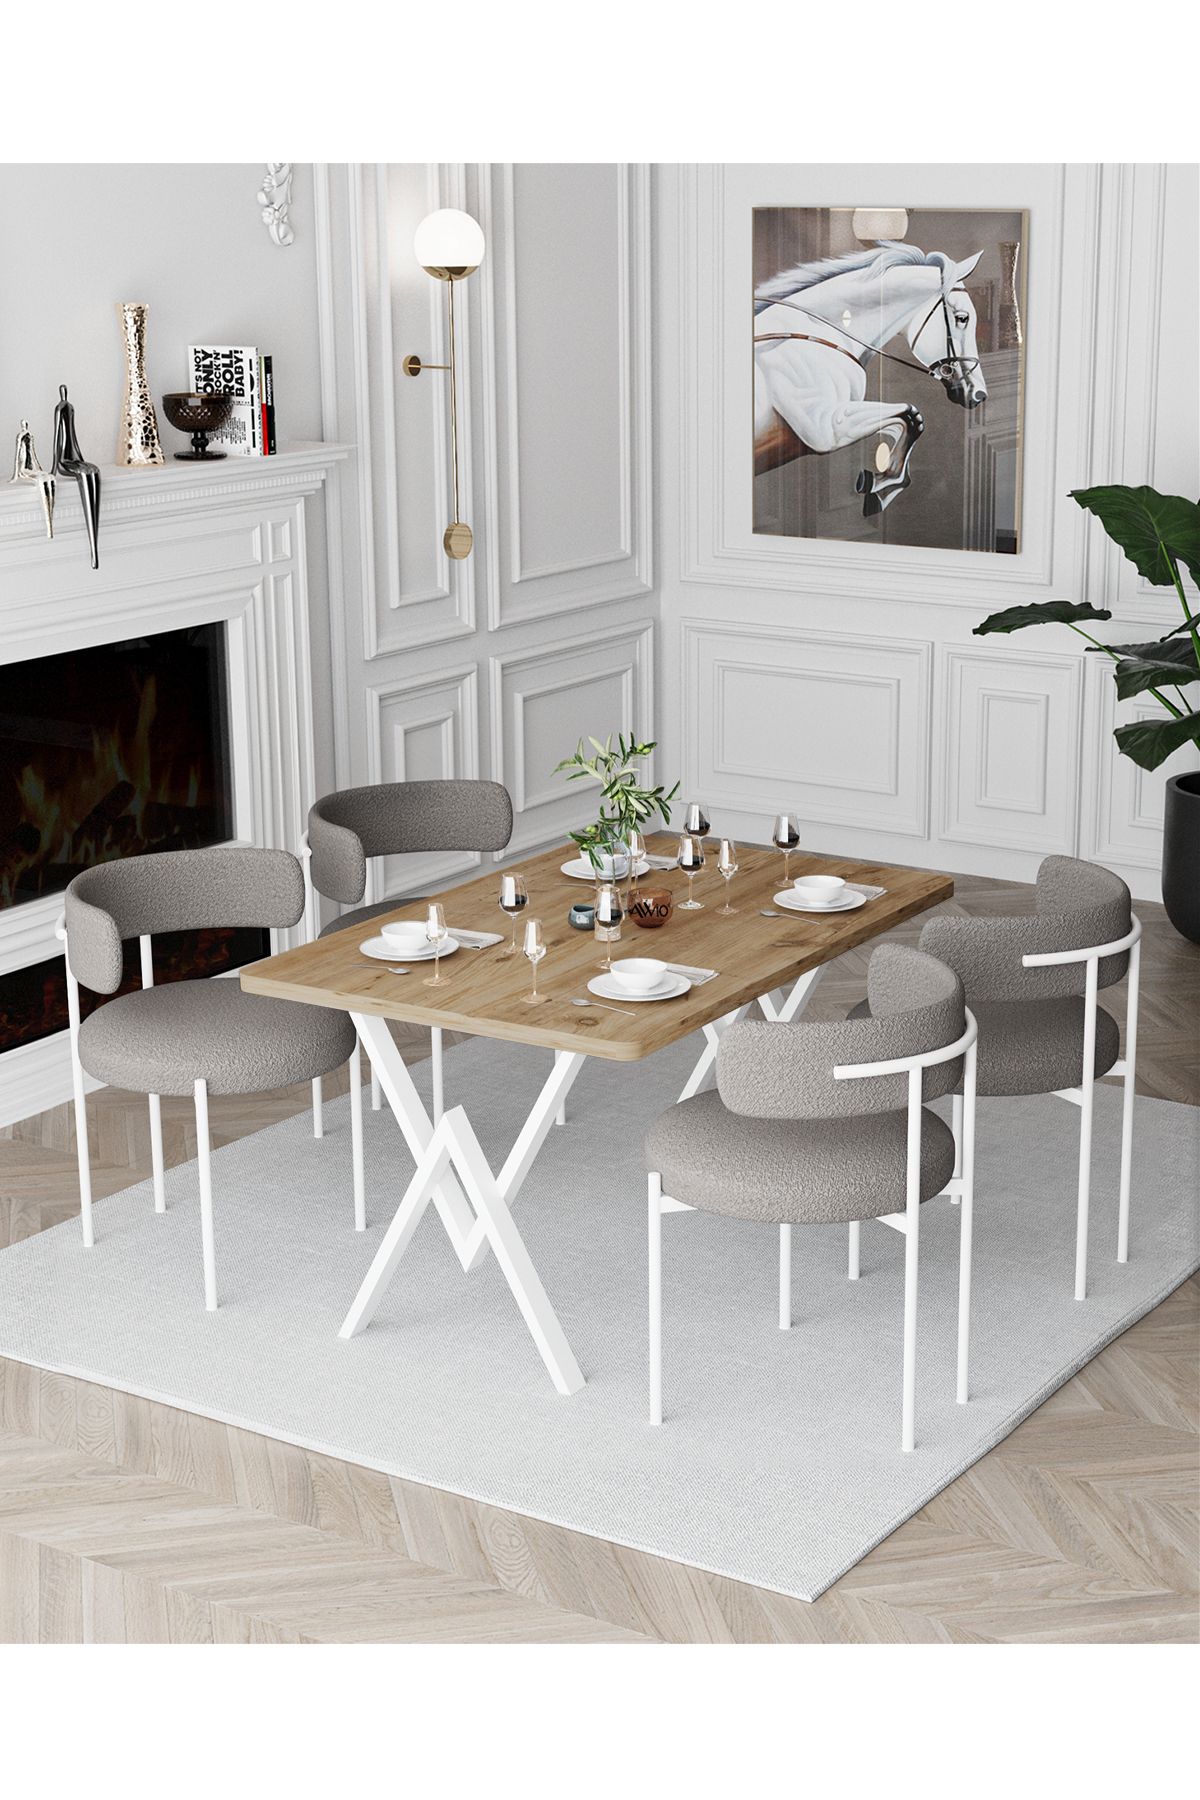 Avvio Trend Beyaz Teddy Sandalye 80x120 Yemek Masası Mutfak Masası 4 Kişilik Masa Sandalye Takımı